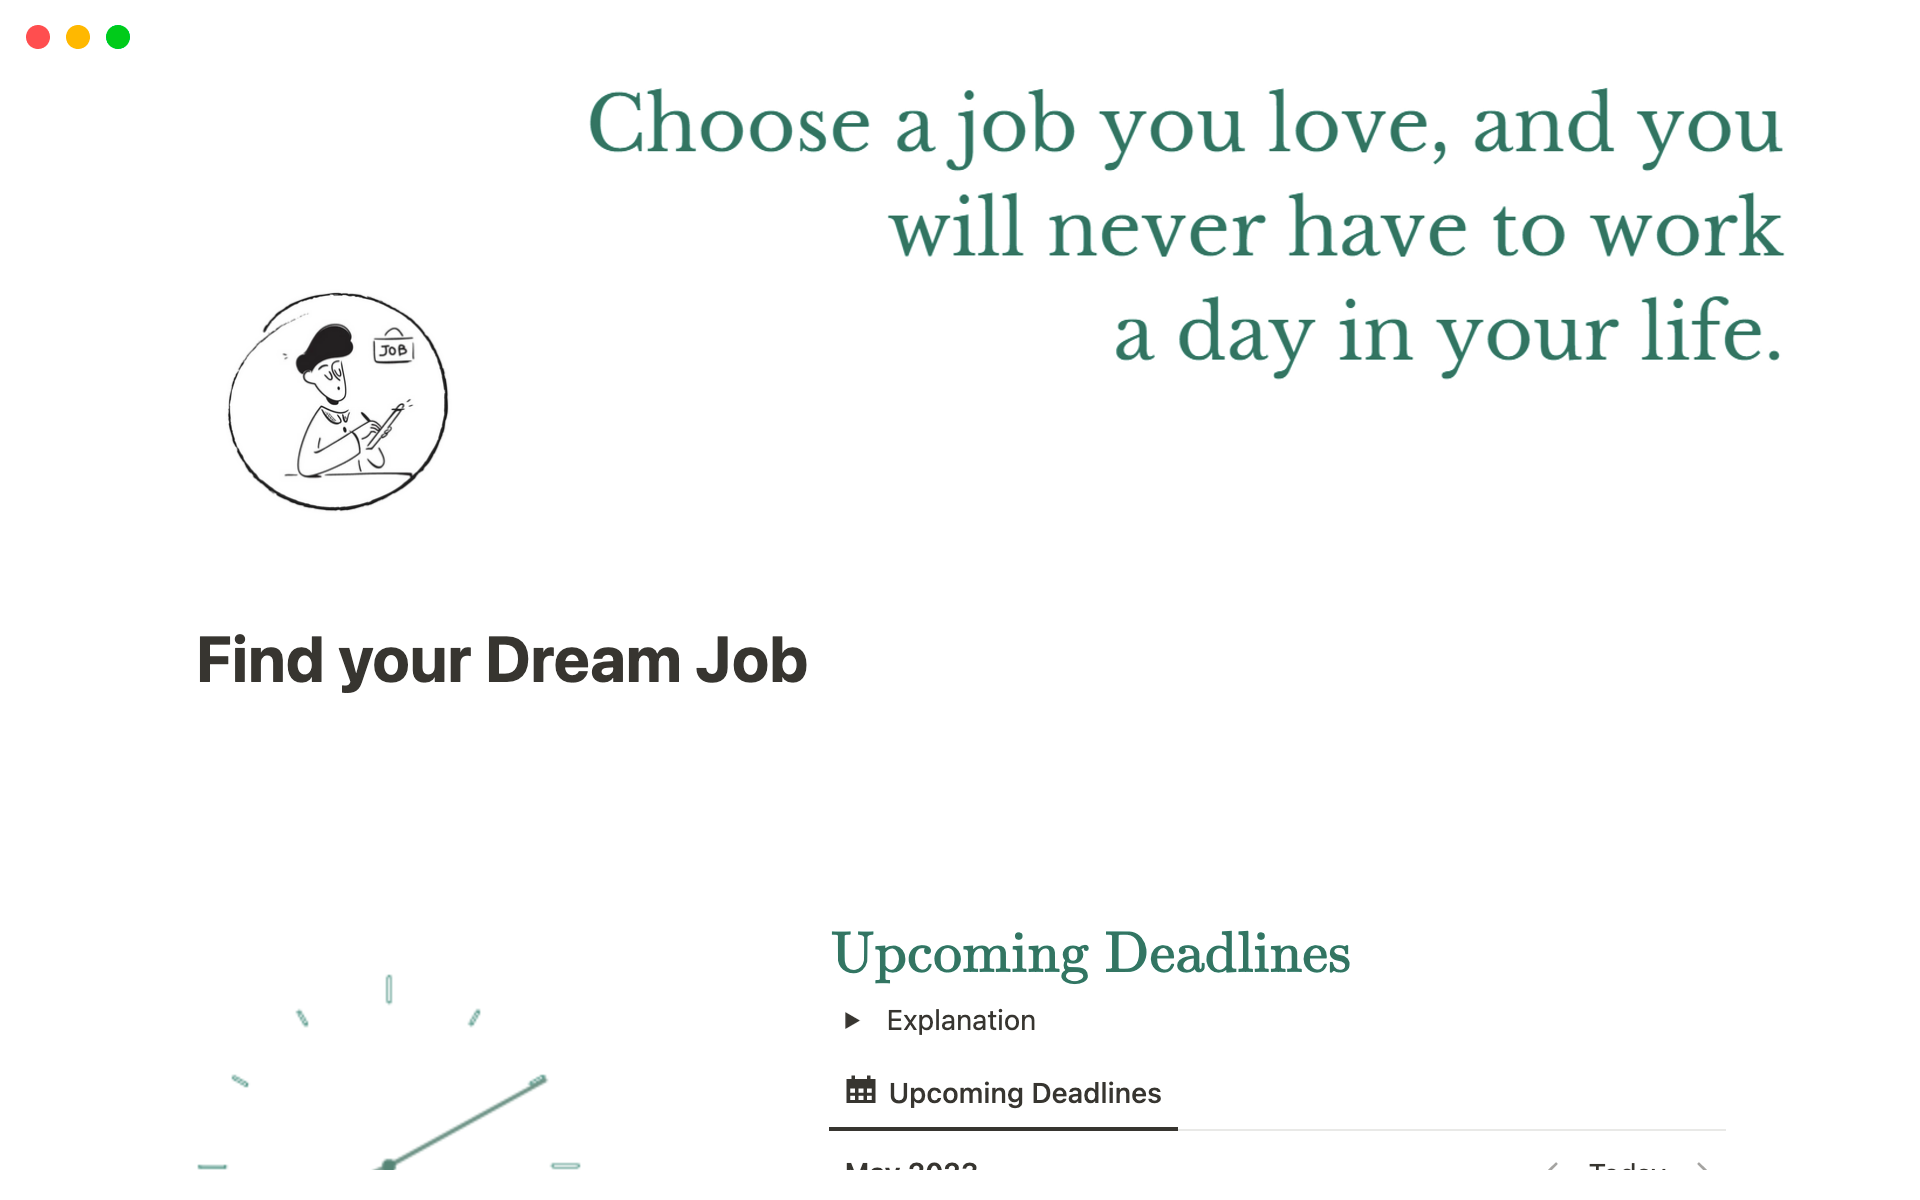 Uma prévia do modelo para Find your Dream Job